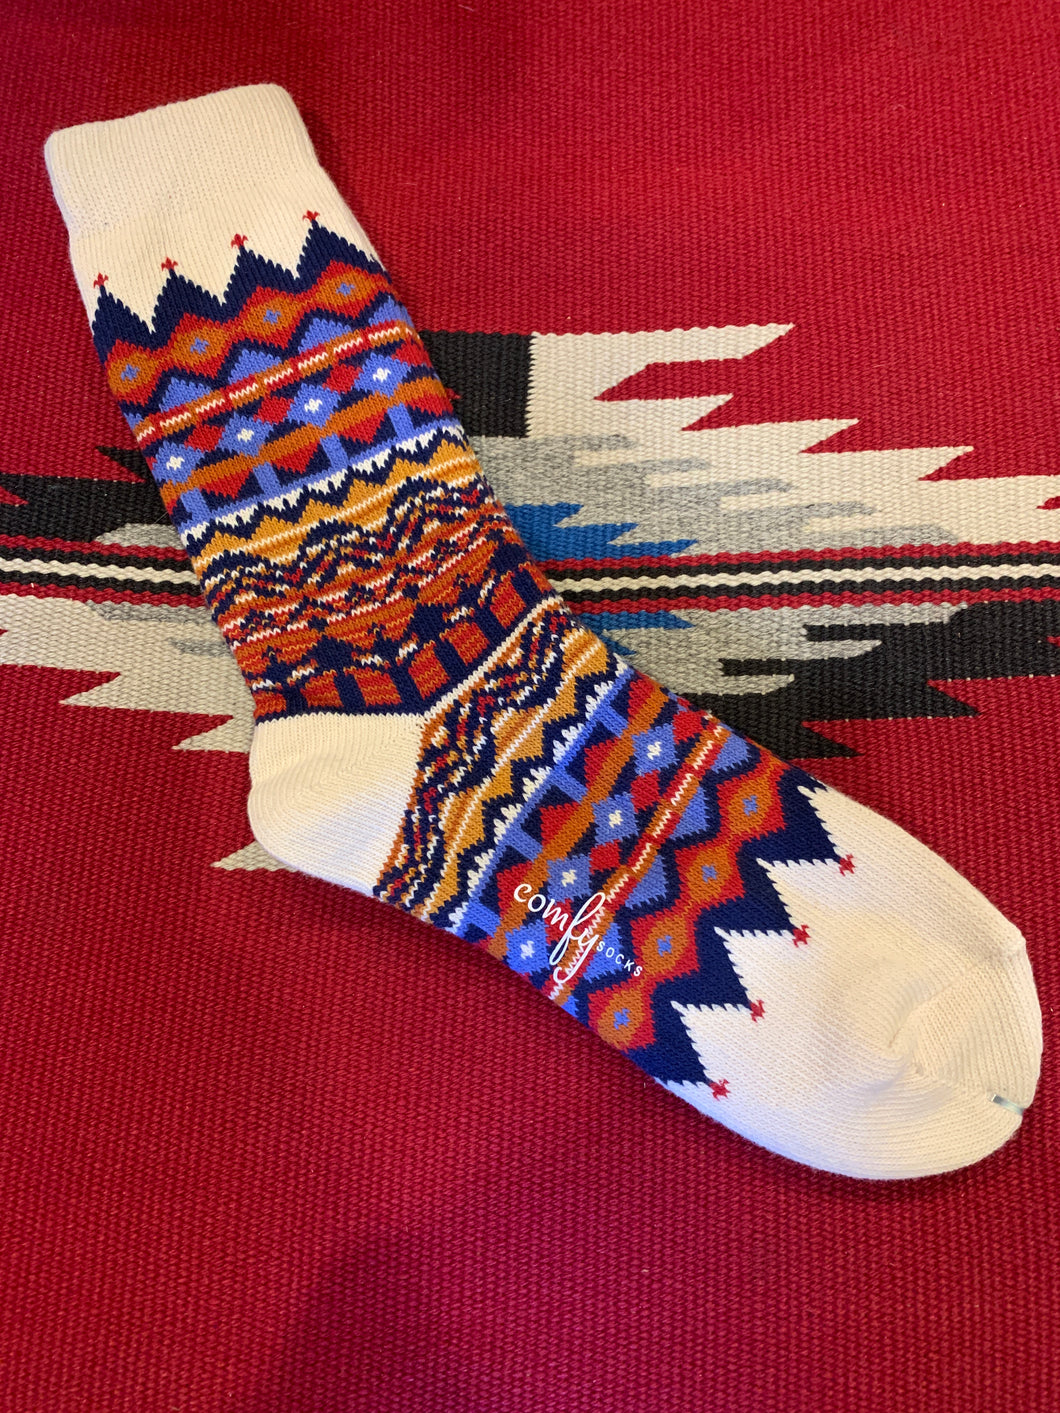 7. Nordic Socks - Tanami White